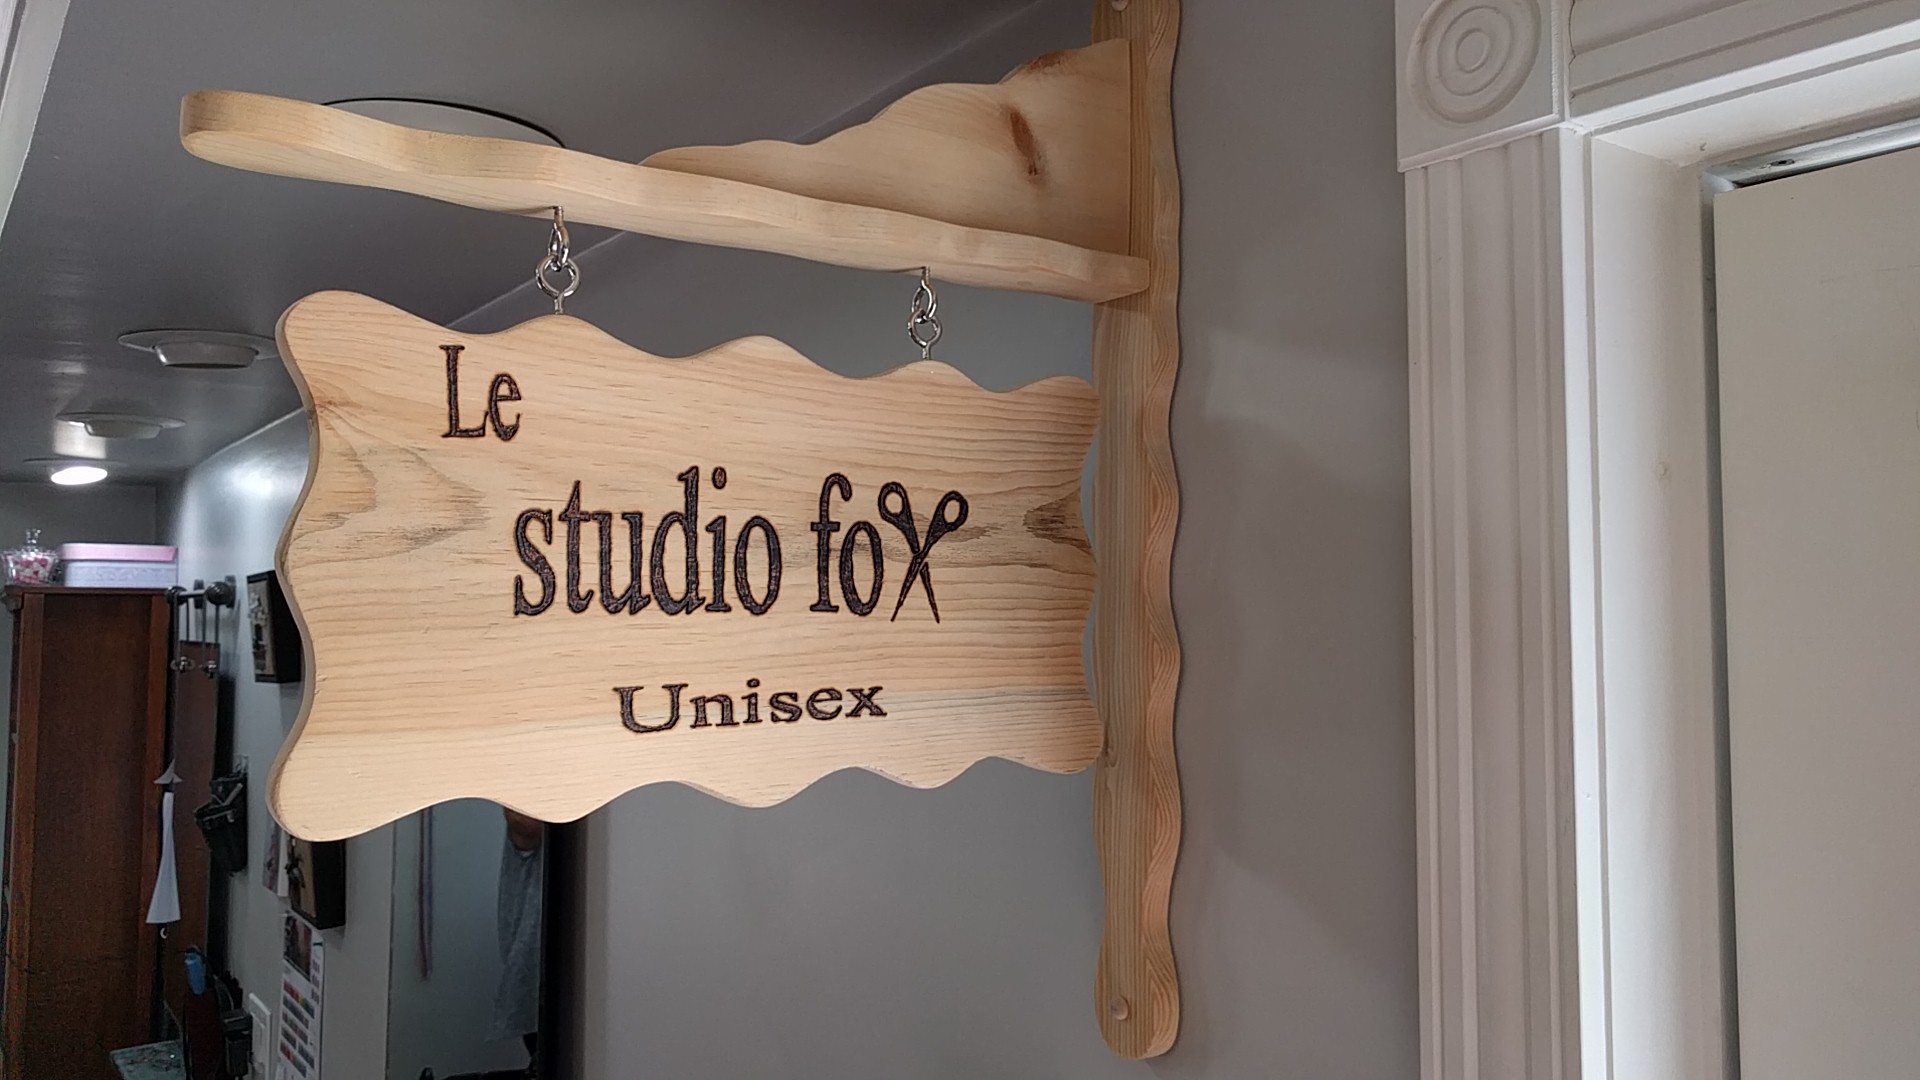 Le Studio Fox 1701 Amirault St, Dieppe New Brunswick E1A 1E3